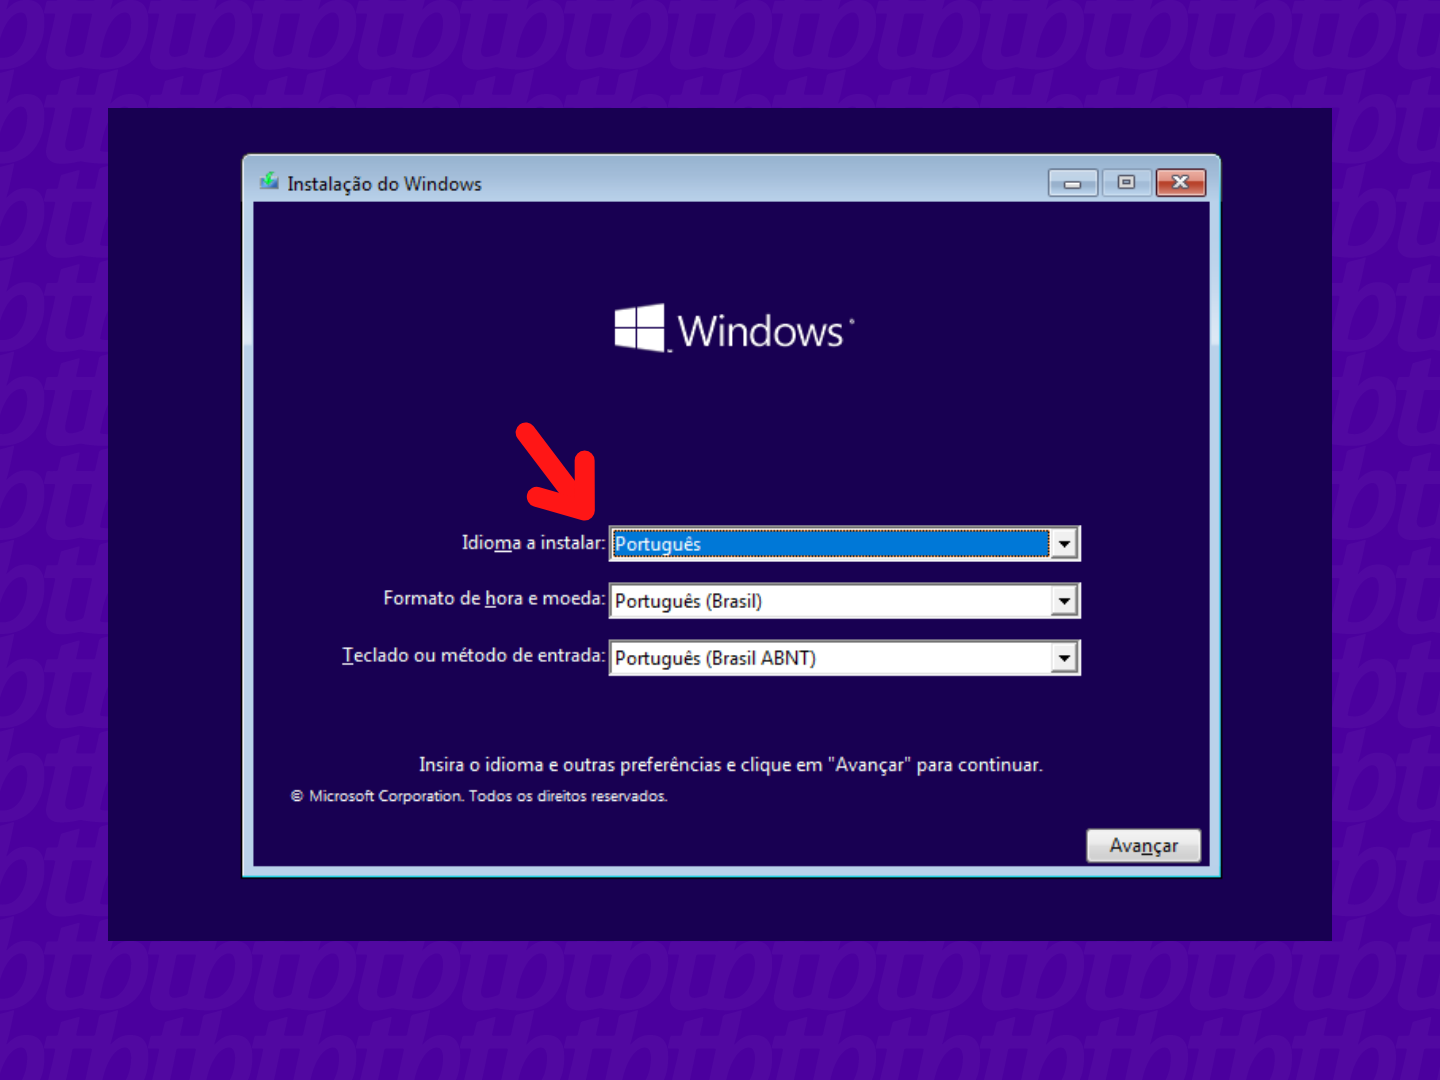 Tela de instalação do Windows com seta indicando opções de idioma